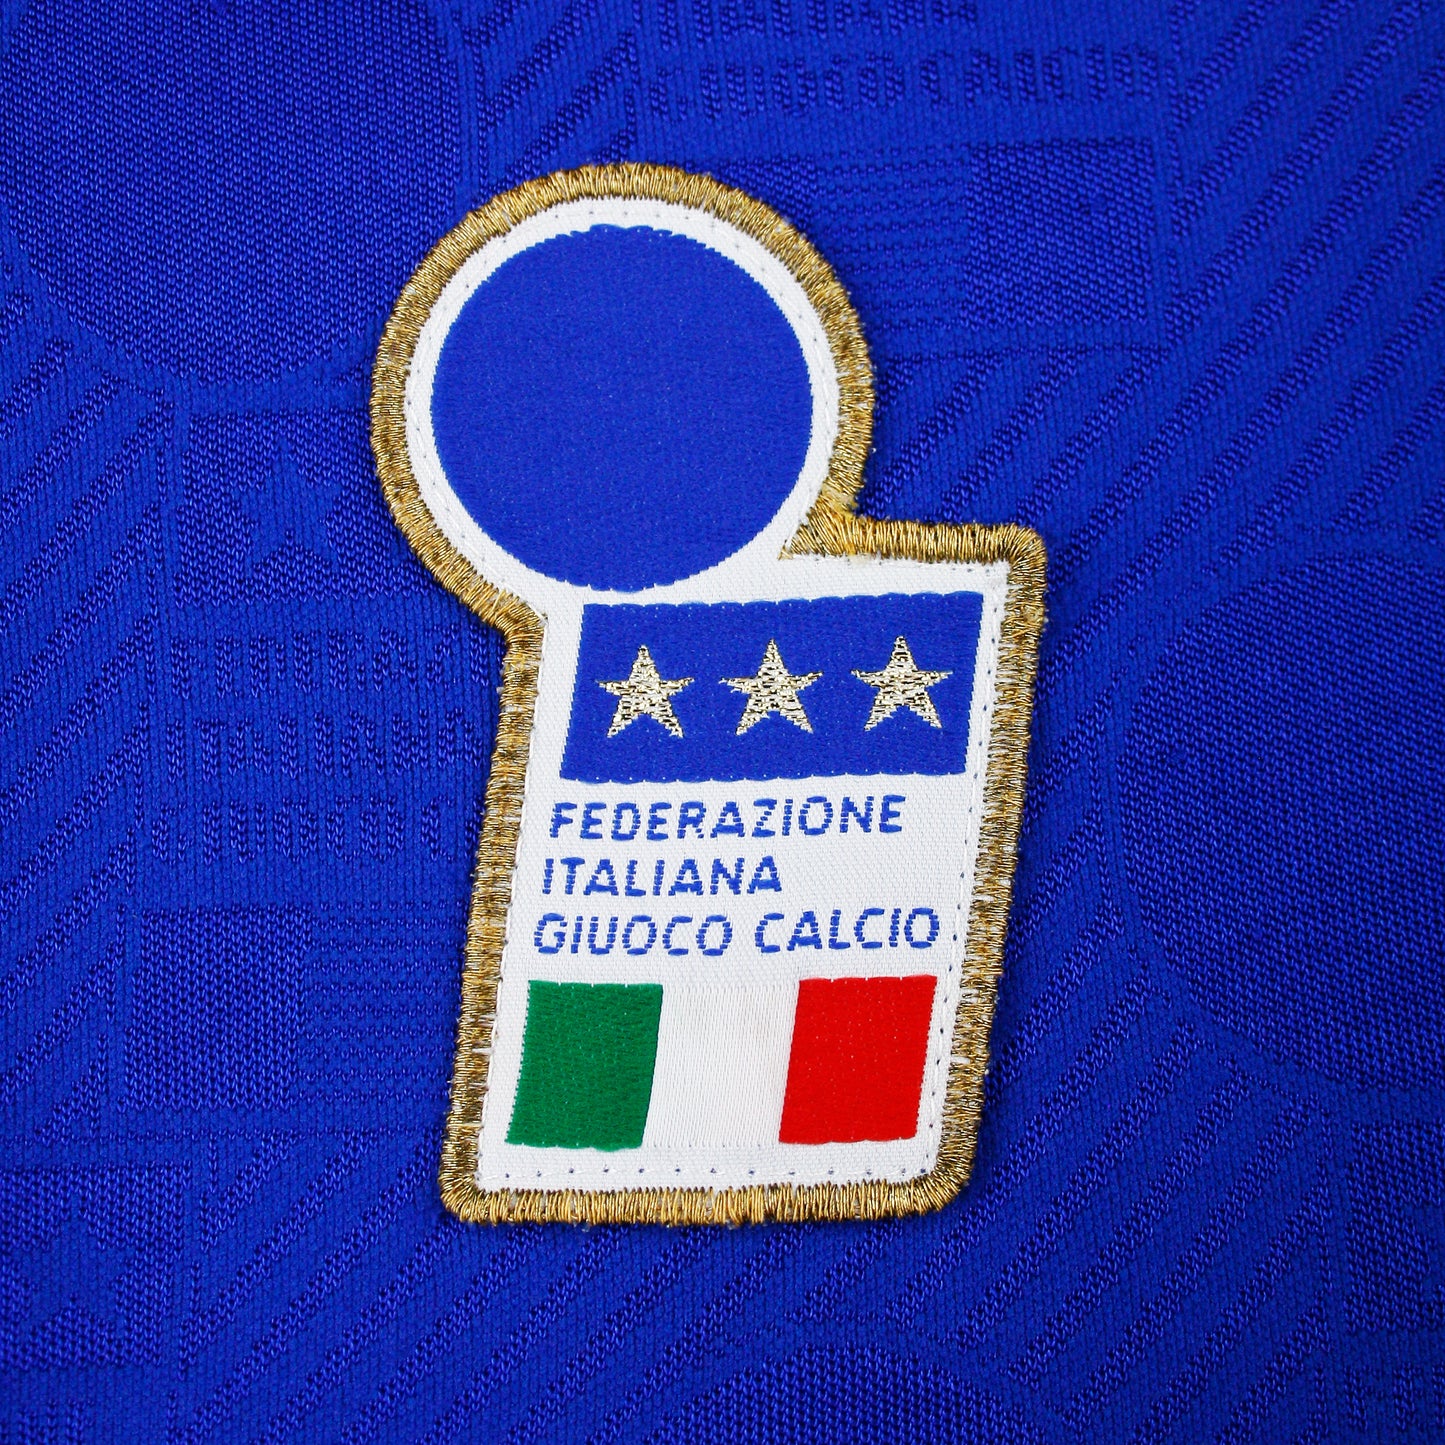 Italia 93/94 • Camiseta Local • L • #10